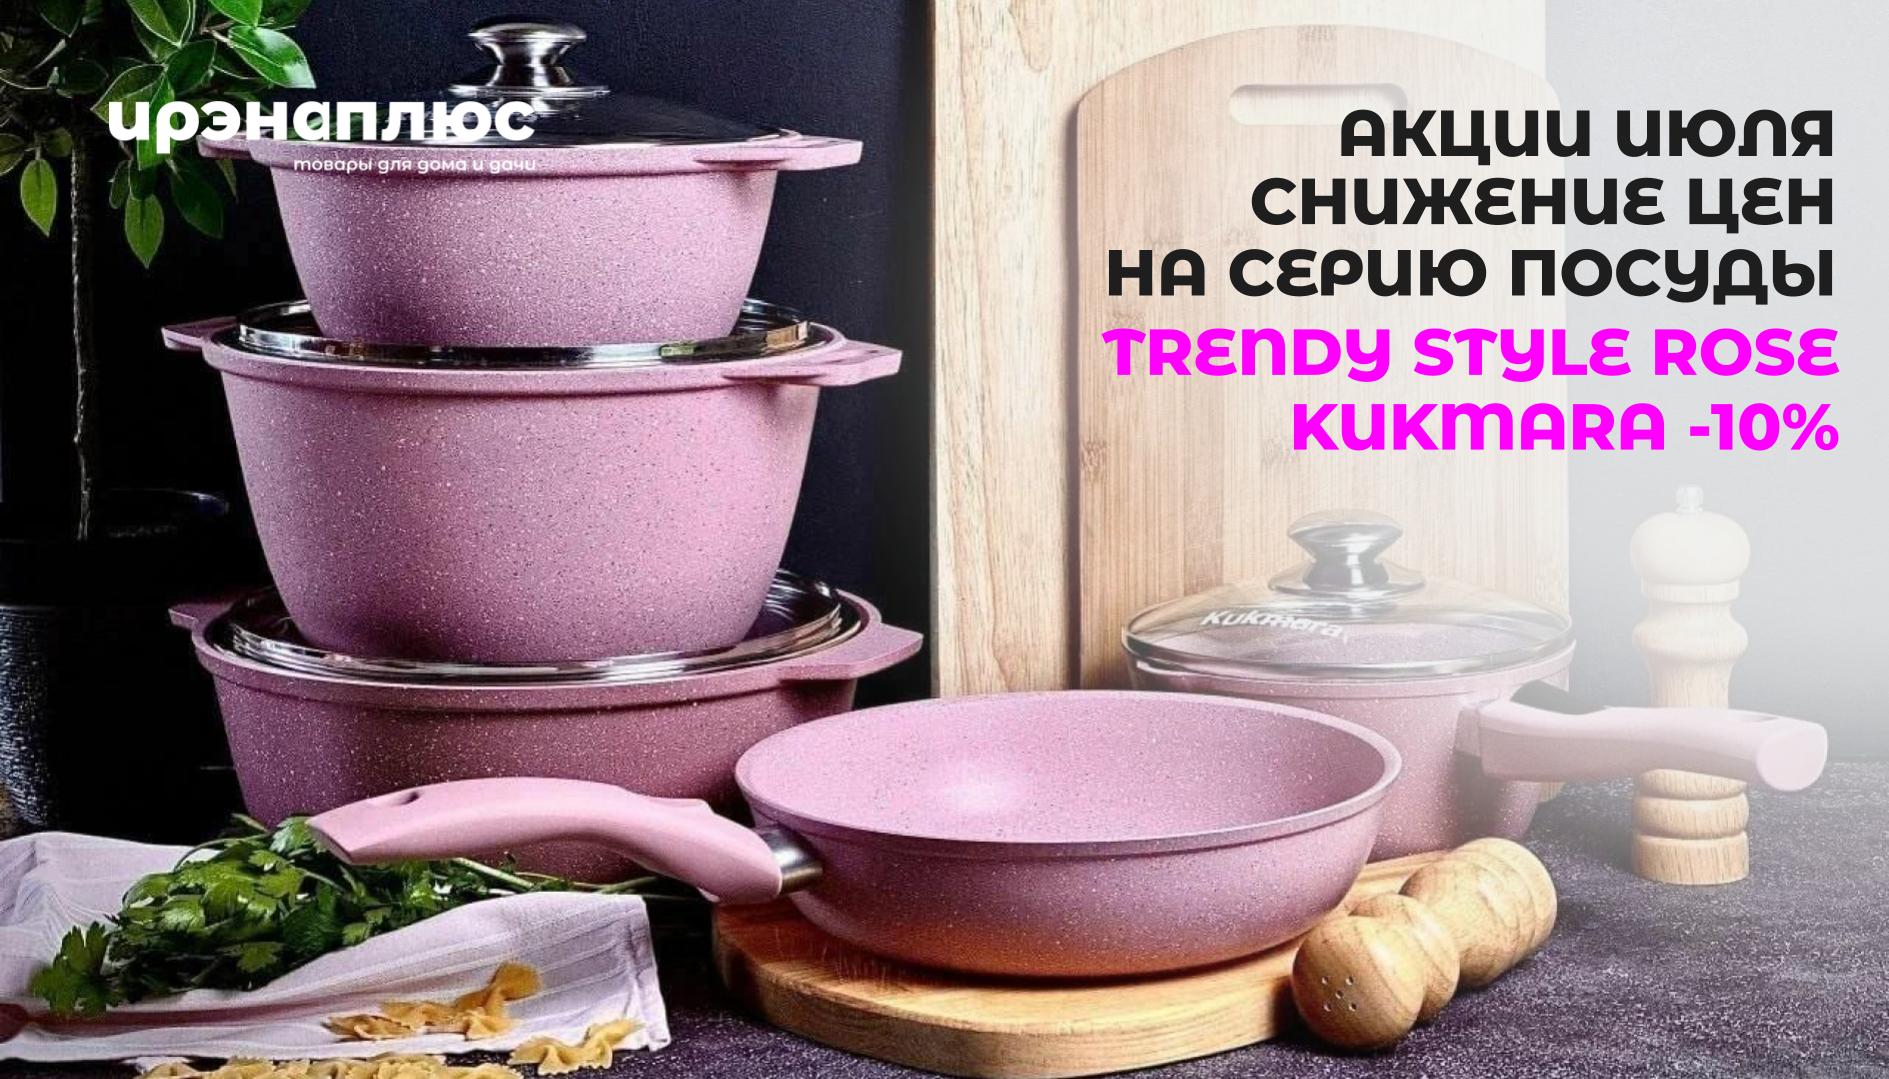 Акции июля - снижение цен на посуду для приготовления - TRENDY STYLE ROSE ТМ KUKMARA